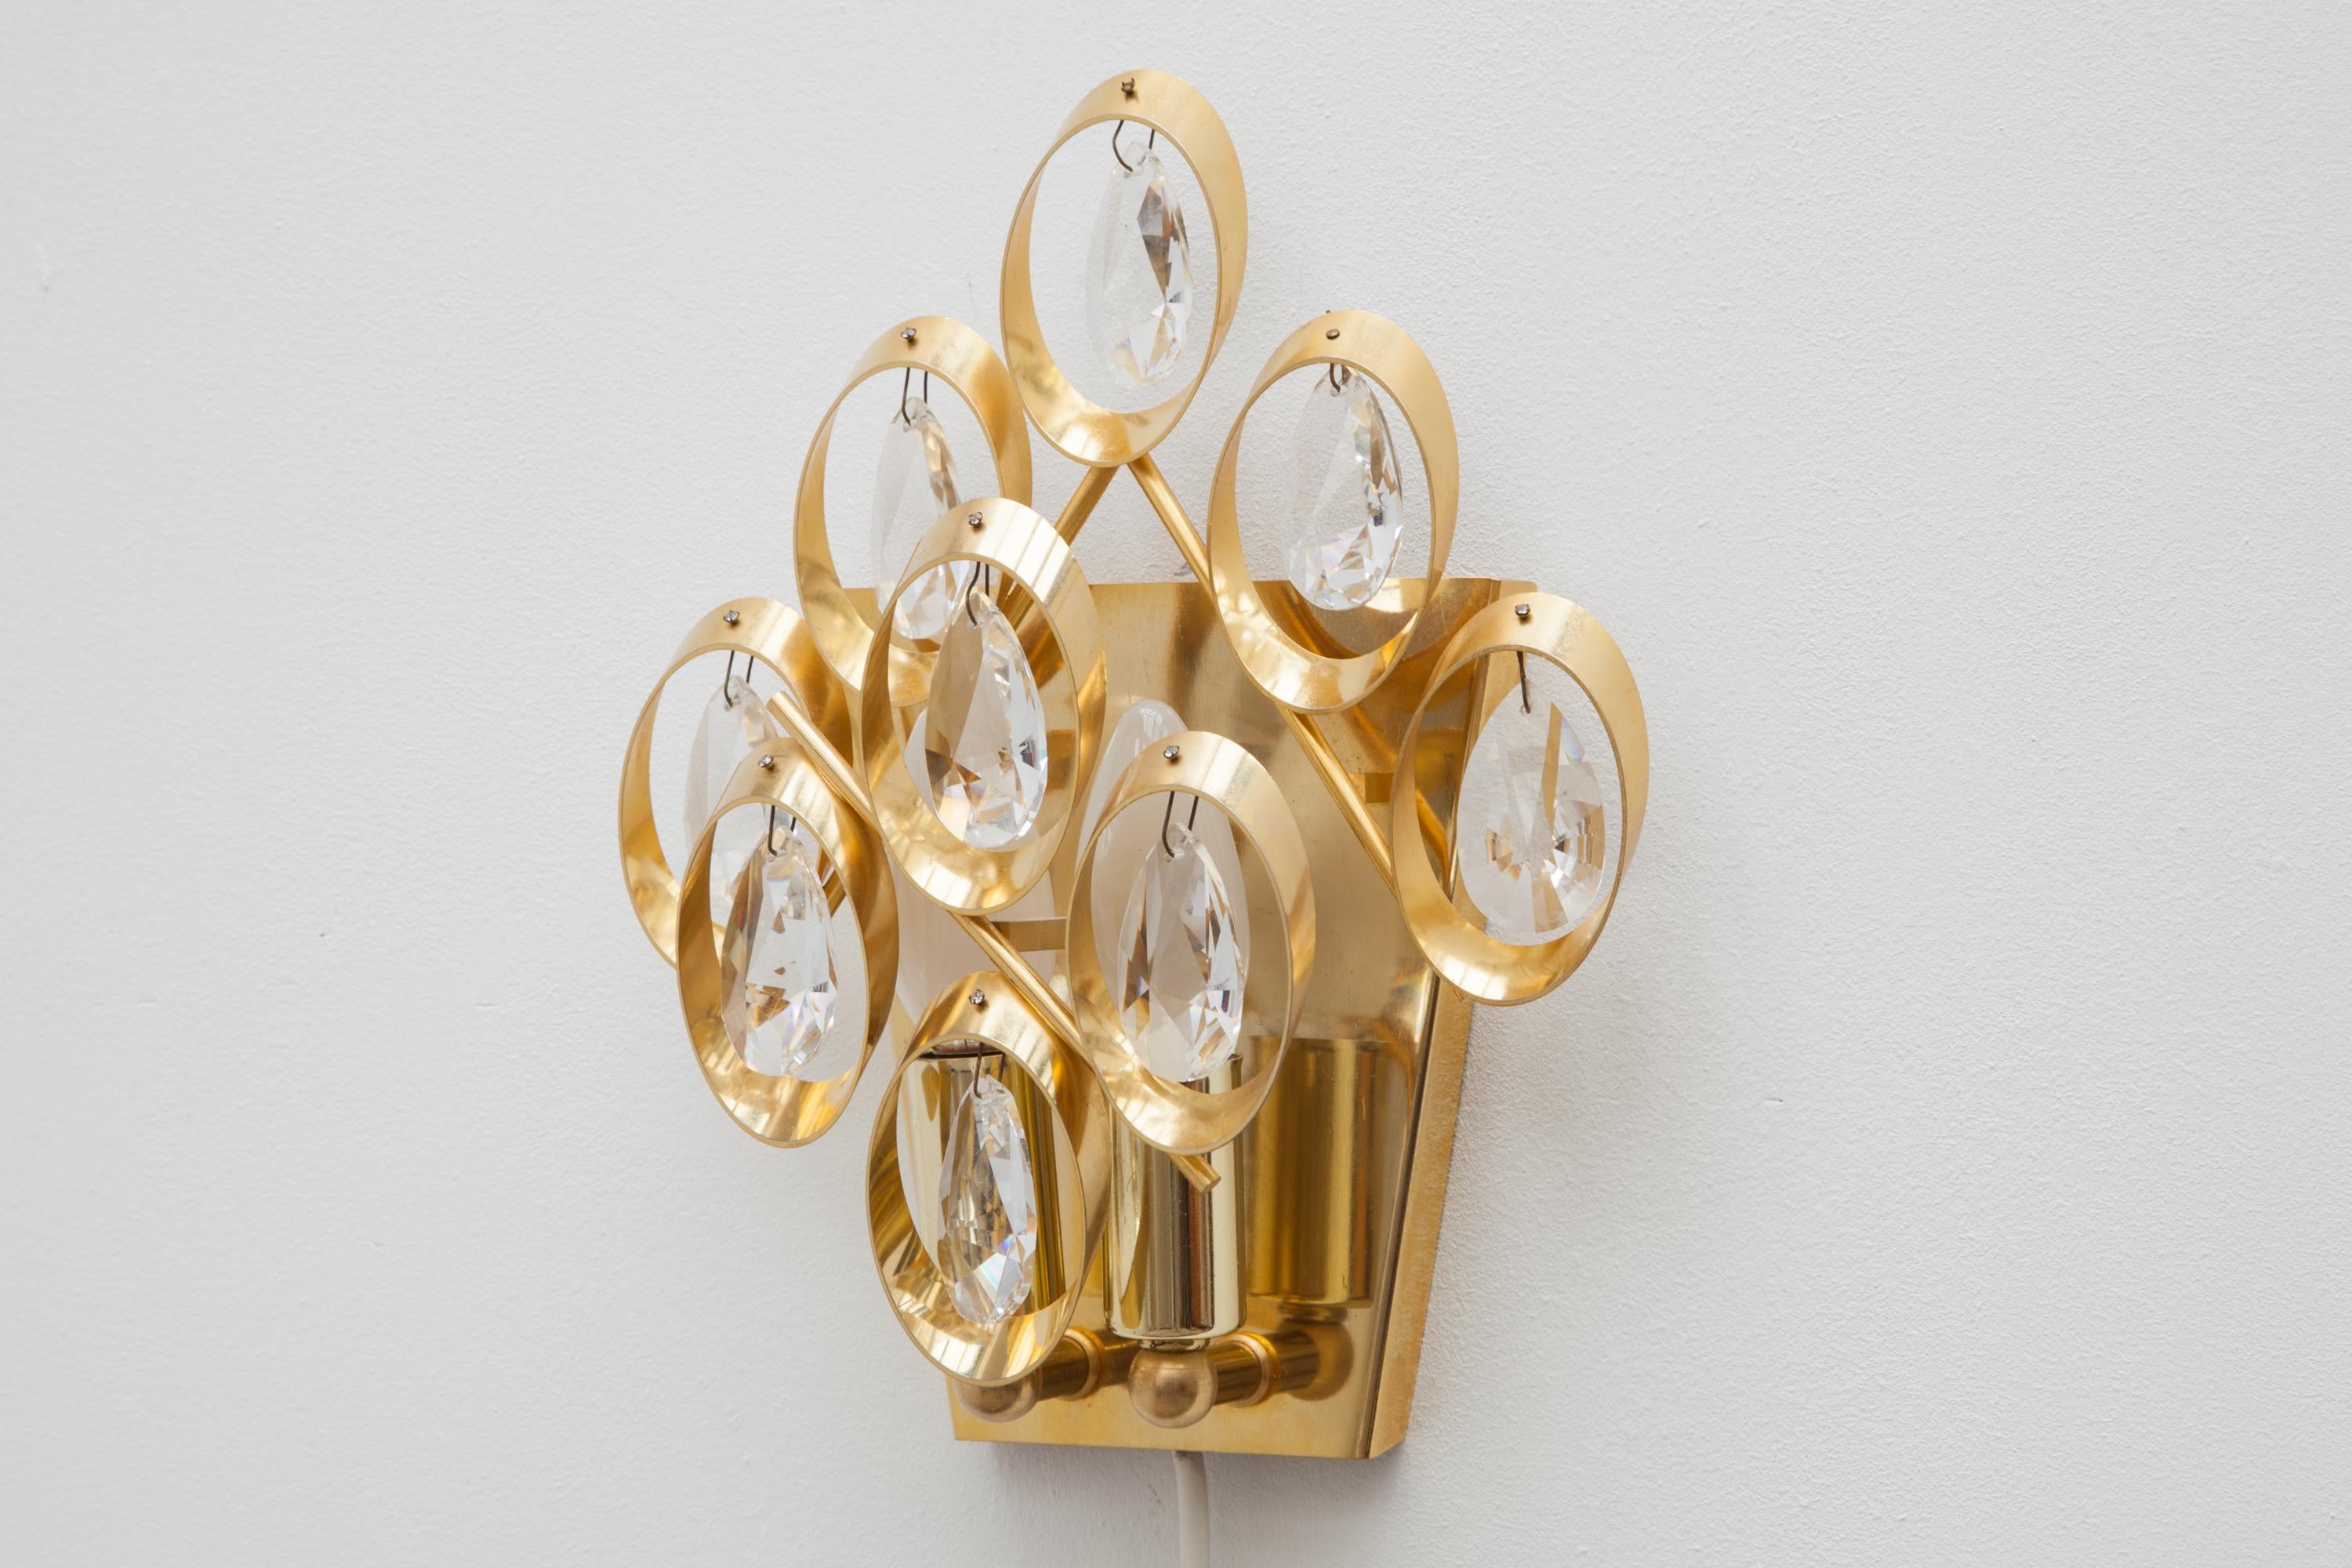 Ensemble de deux appliques des années 1960 par Palme et Walter, Allemagne.
Présente huit gouttes de cristal en verre sur un cadre en laiton, cercles dorés.
Éclairé par deux ampoules.23,5 L x 28 H x 10 P cm.